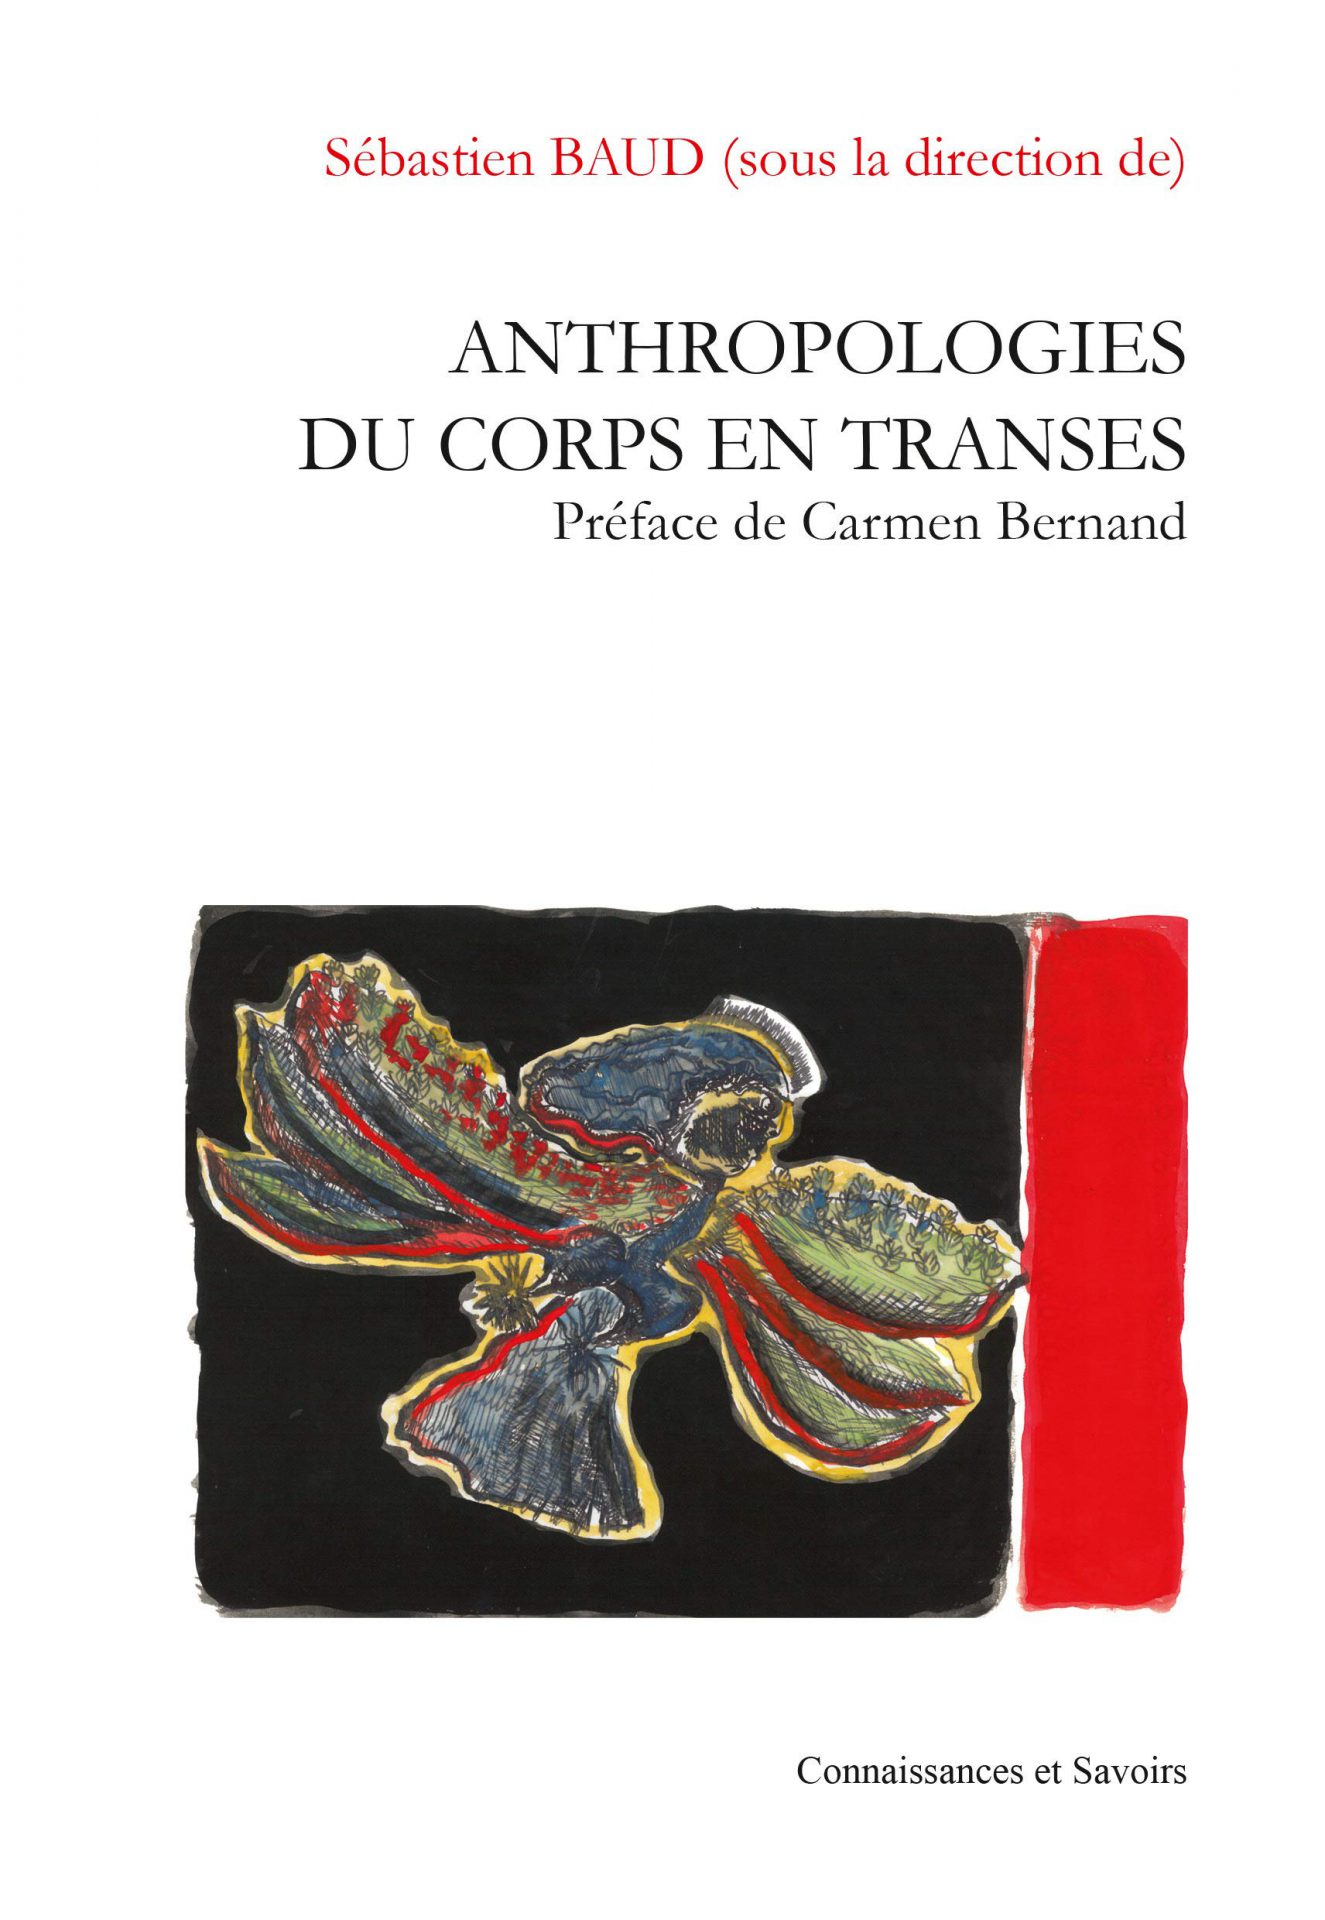 Sebastien-Baud-Anthropologie-du-corps-en-transes-Ed- Connaissances-et-Savoirs-2016